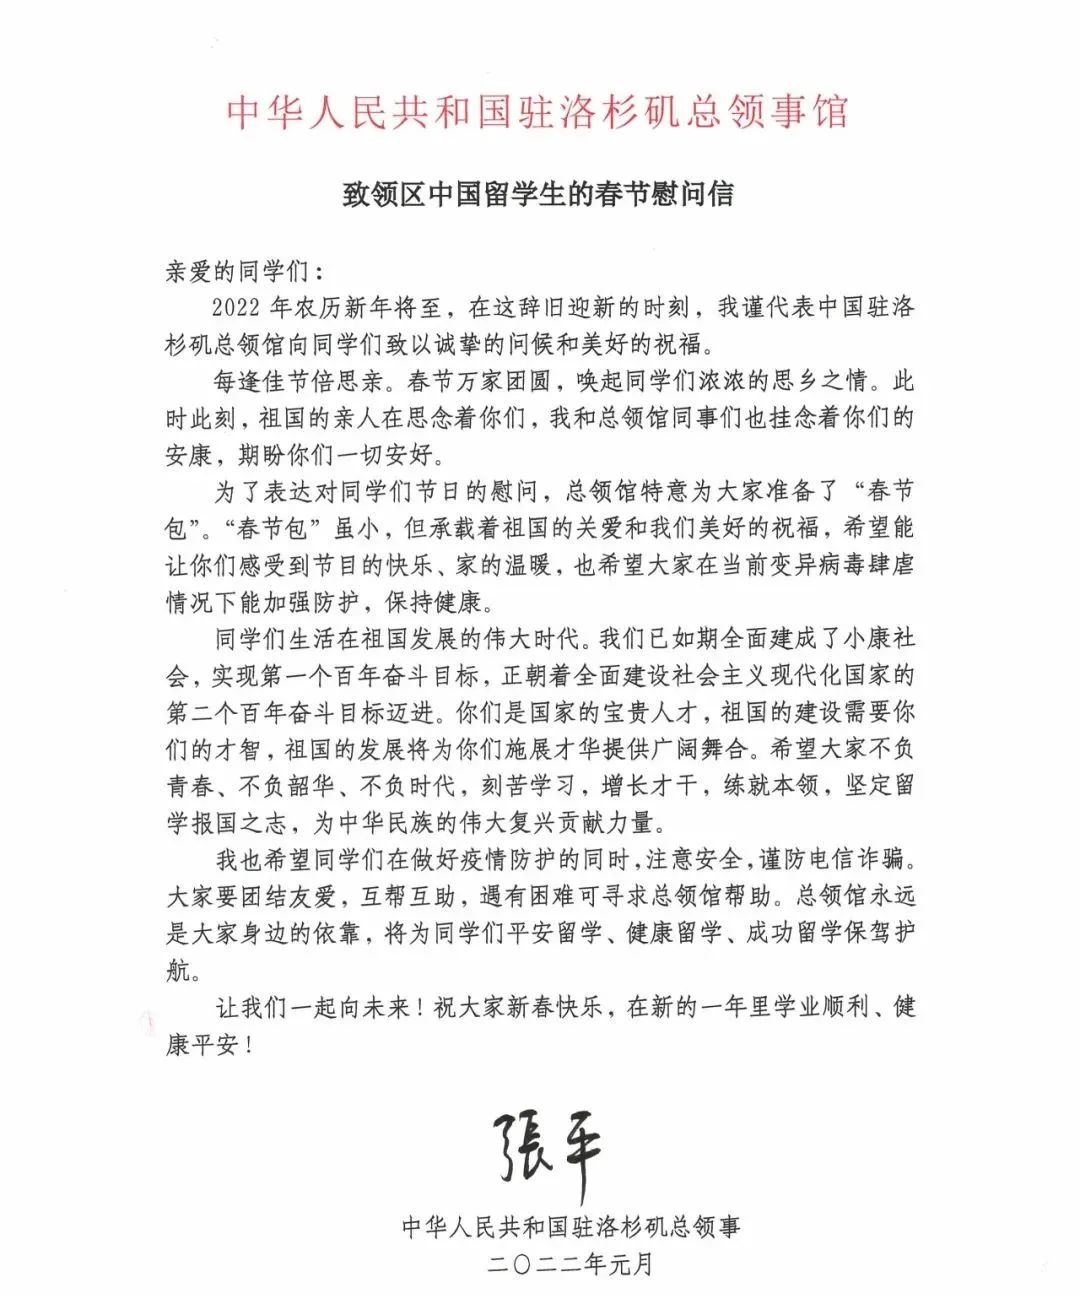 张平总领事致领区中国留学生的春节慰问信